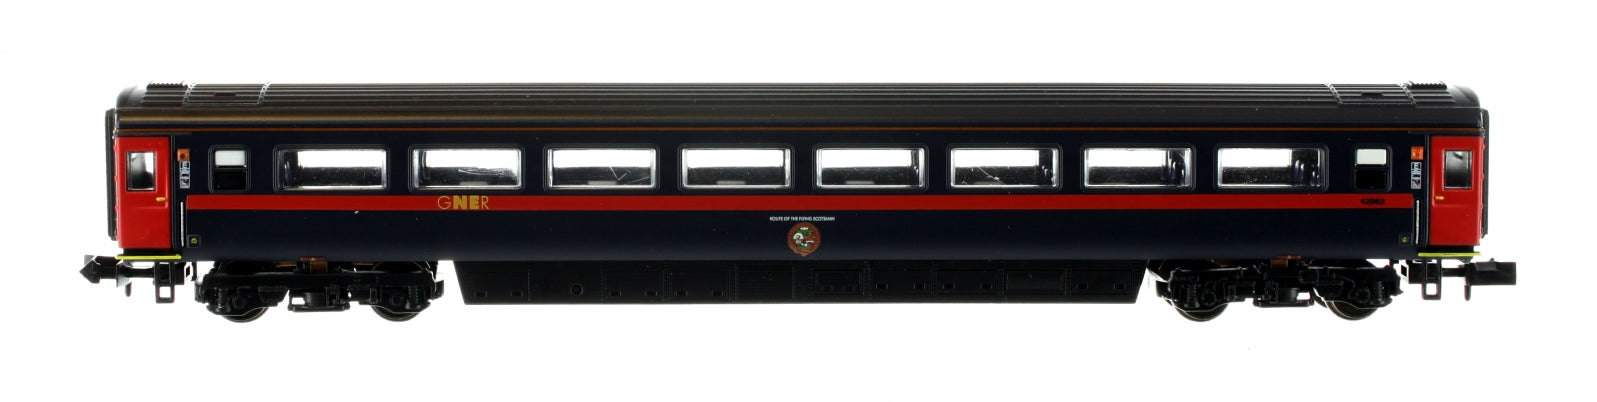 2P-005-932 N Gauge MK 3 GNER 2nd Class 42063 HST